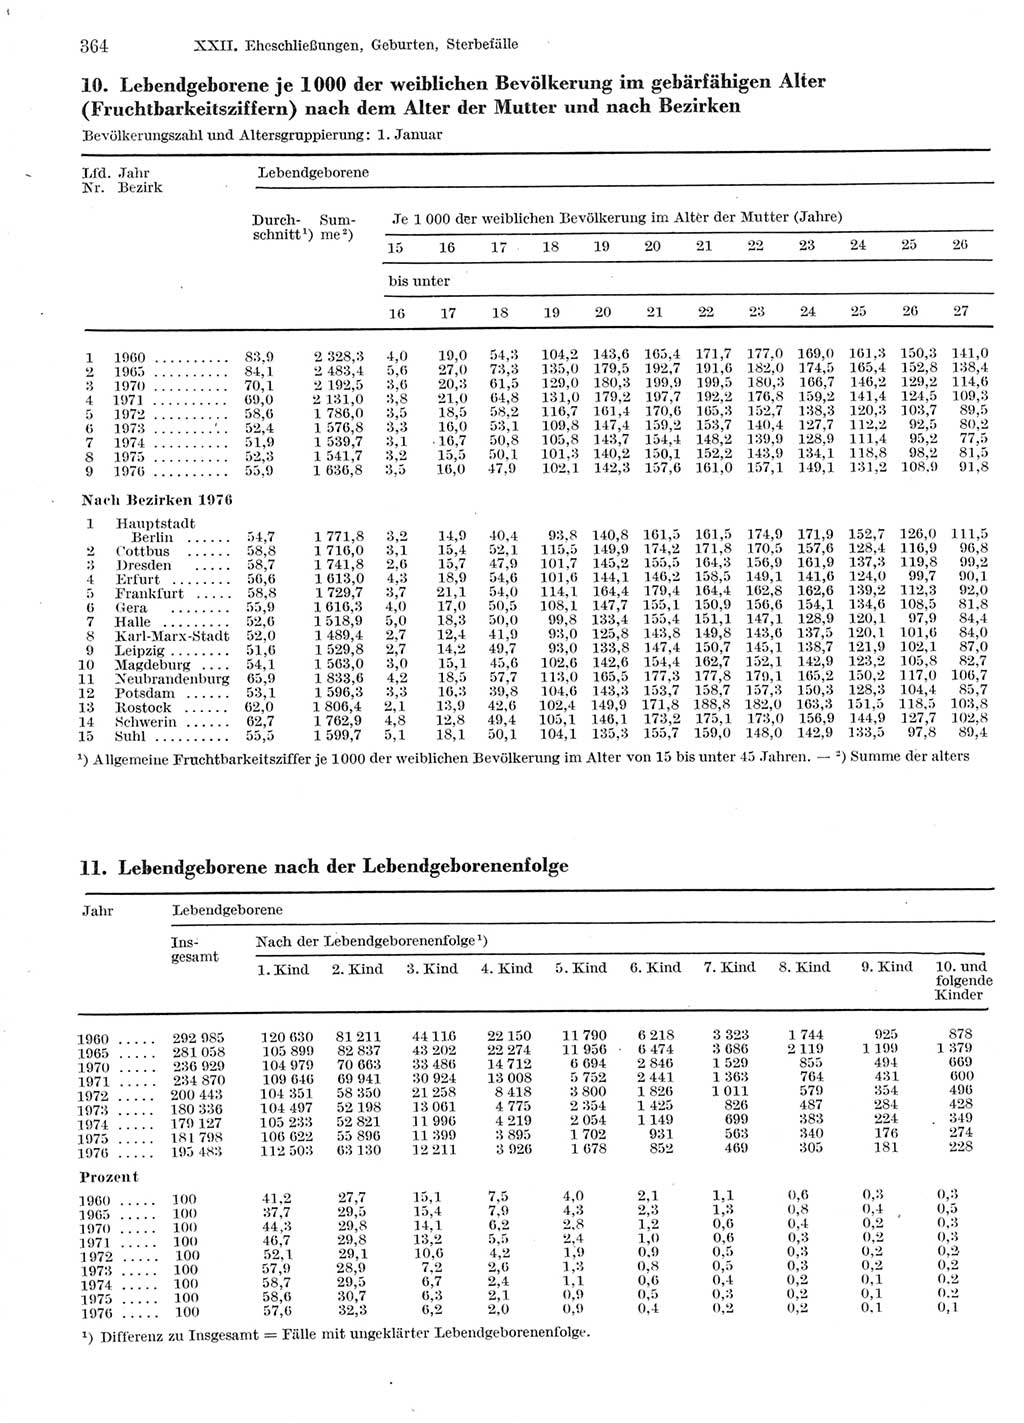 Statistisches Jahrbuch der Deutschen Demokratischen Republik (DDR) 1978, Seite 364 (Stat. Jb. DDR 1978, S. 364)